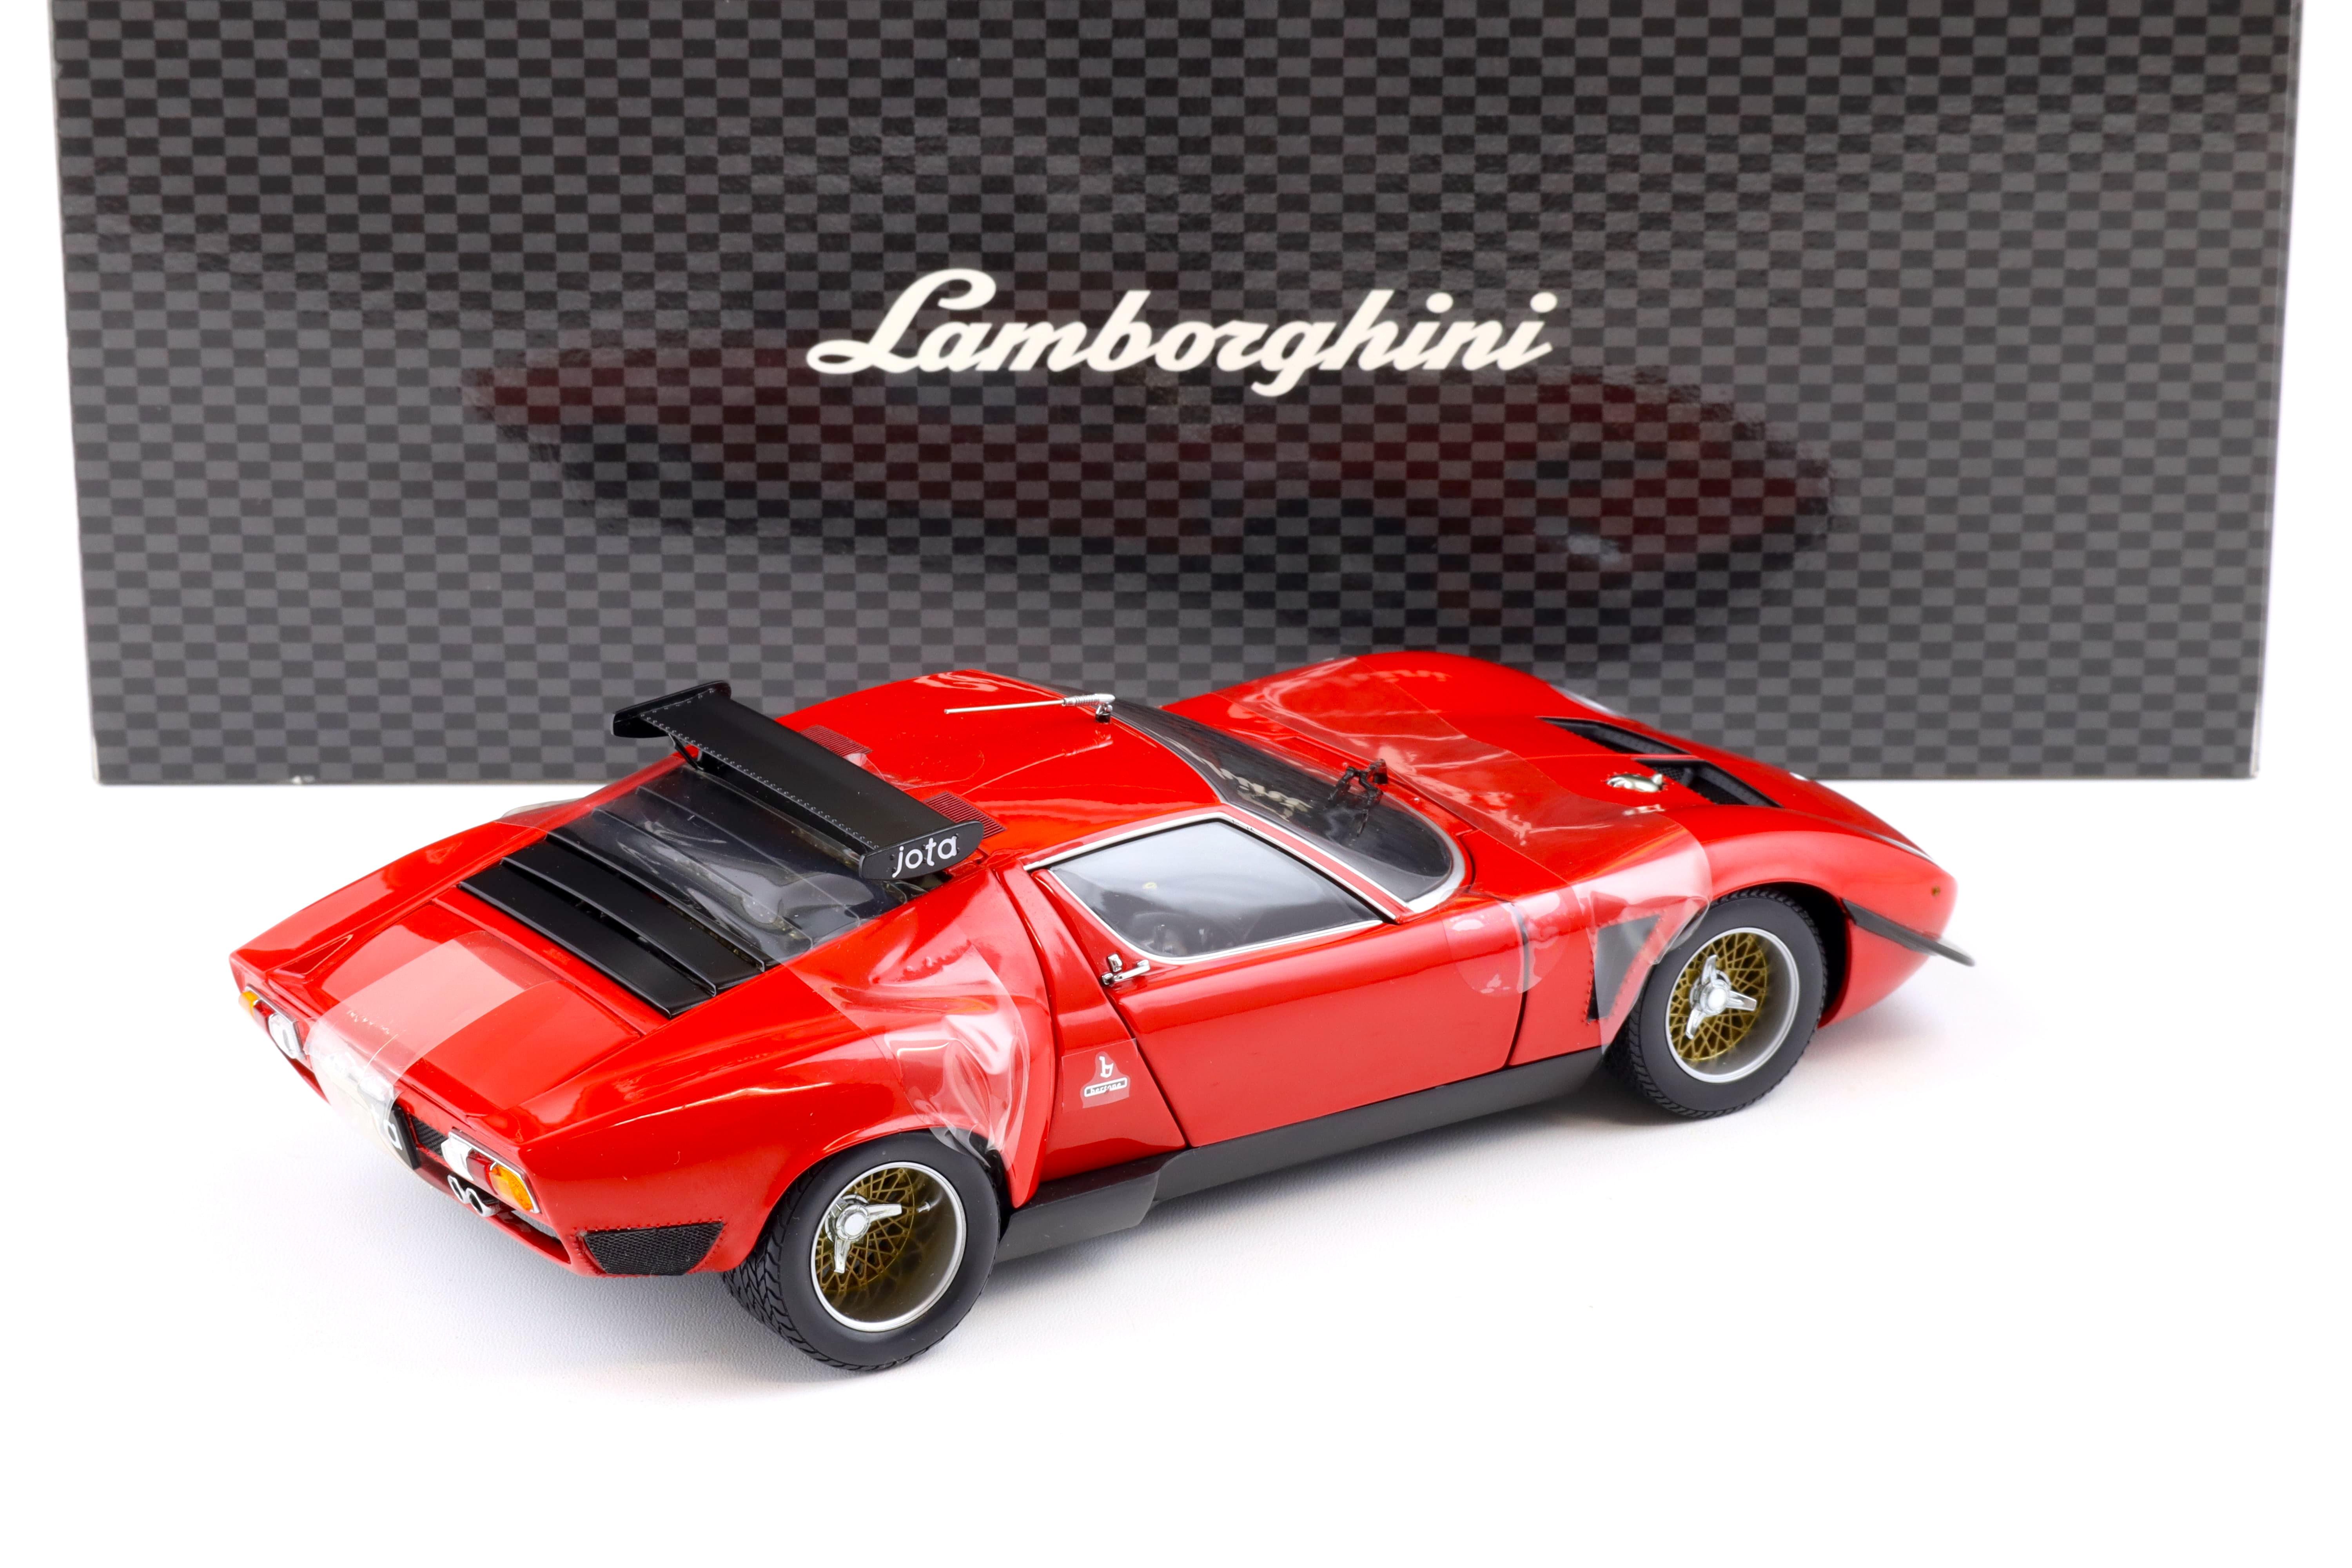 1:18 Kyosho Lamborghini Jota SVR Coupe red 08311R